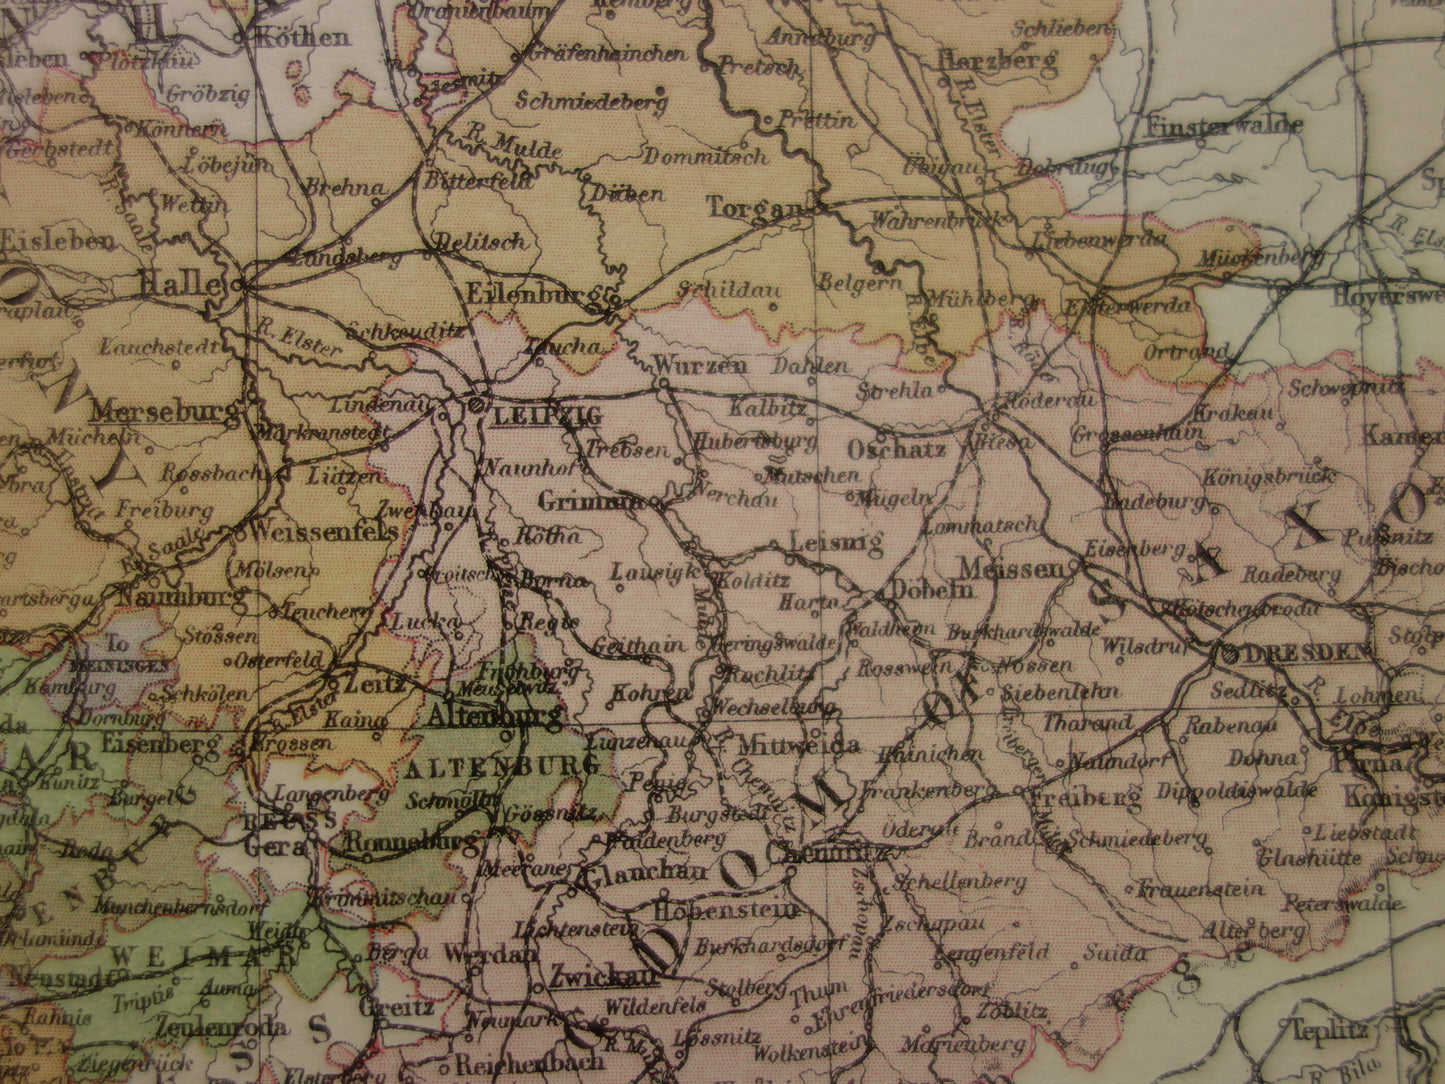 SAKSEN oude kaart van koninkrijk Saksen Duitsland 1886 originele antieke Engelse landkaart Dresden Halle Leipzig